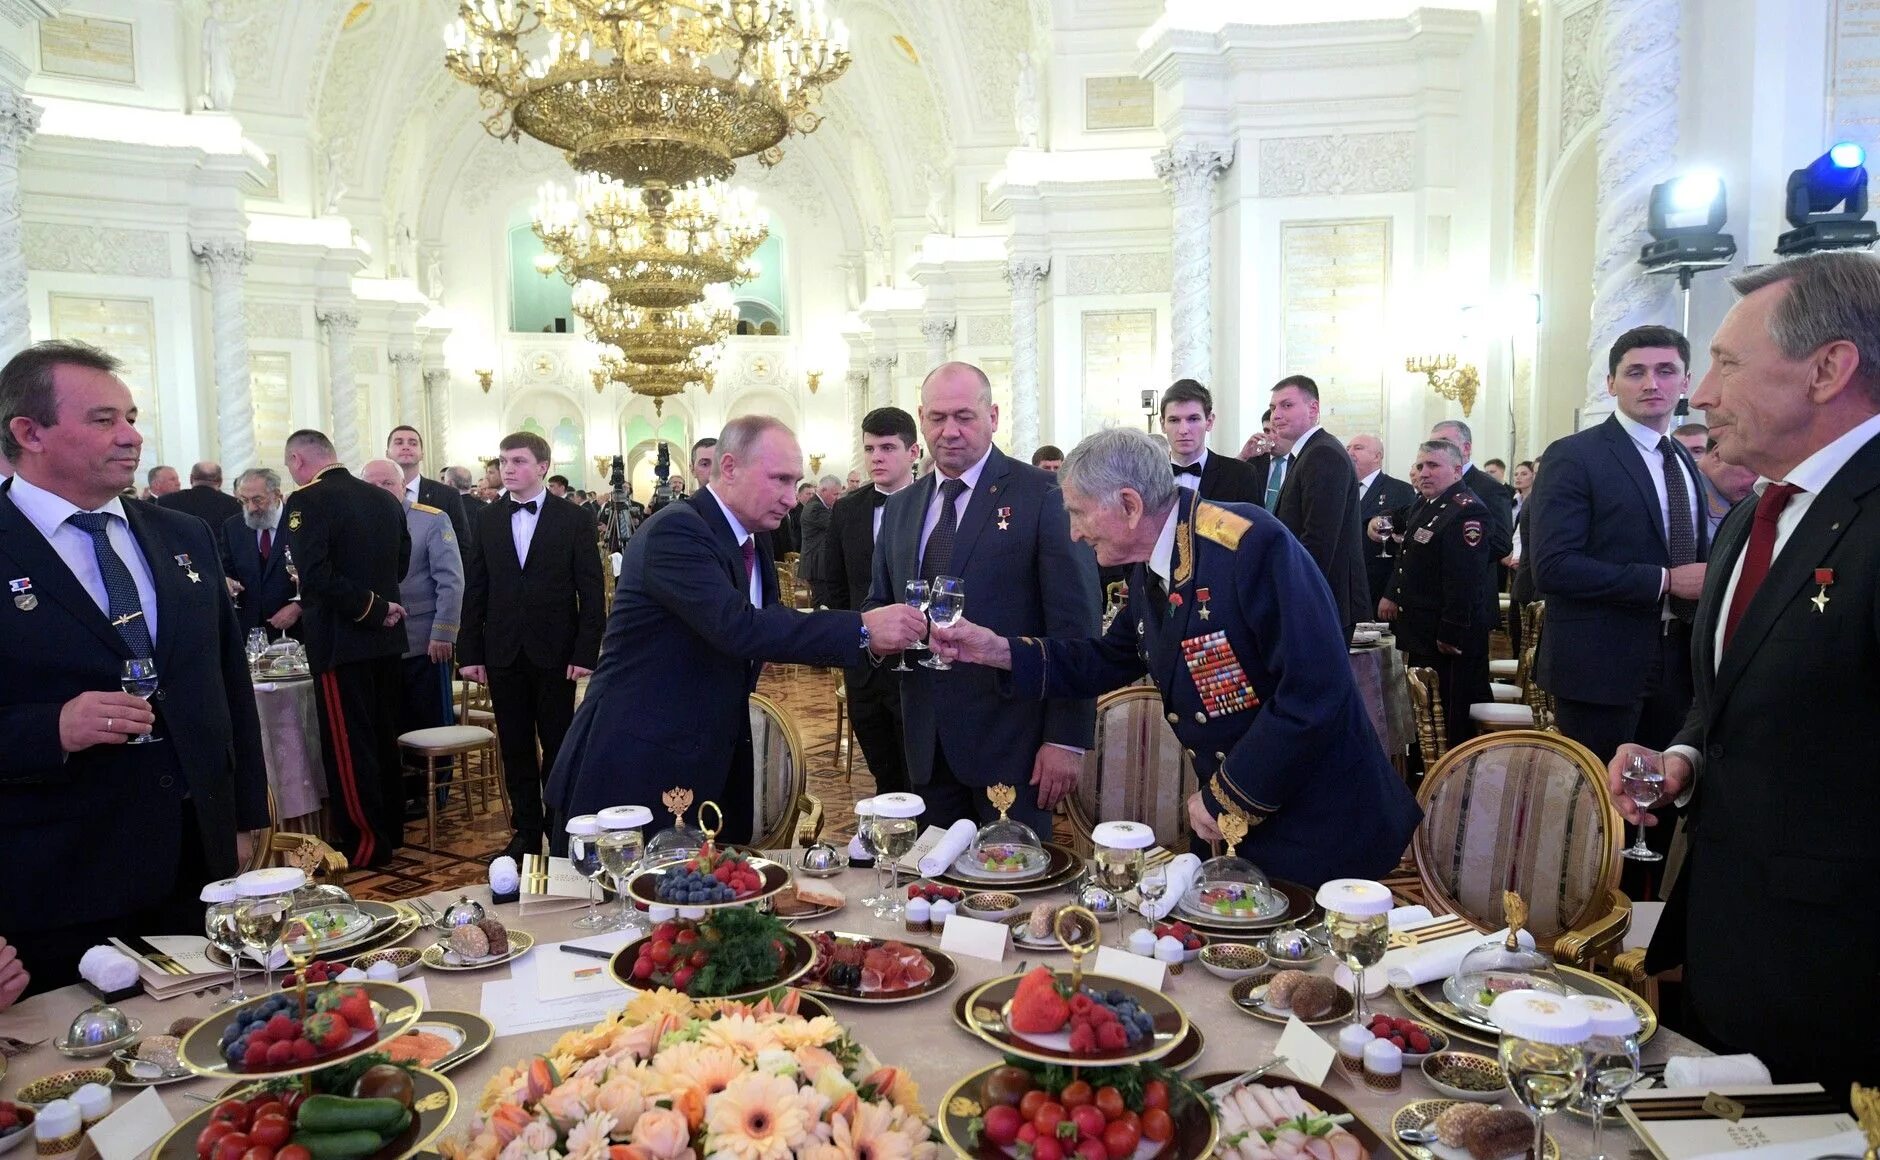 Банкет в Кремле. Торжественный прием в Кремле. Застолье в Кремле. Накрытый стол в Кремле.